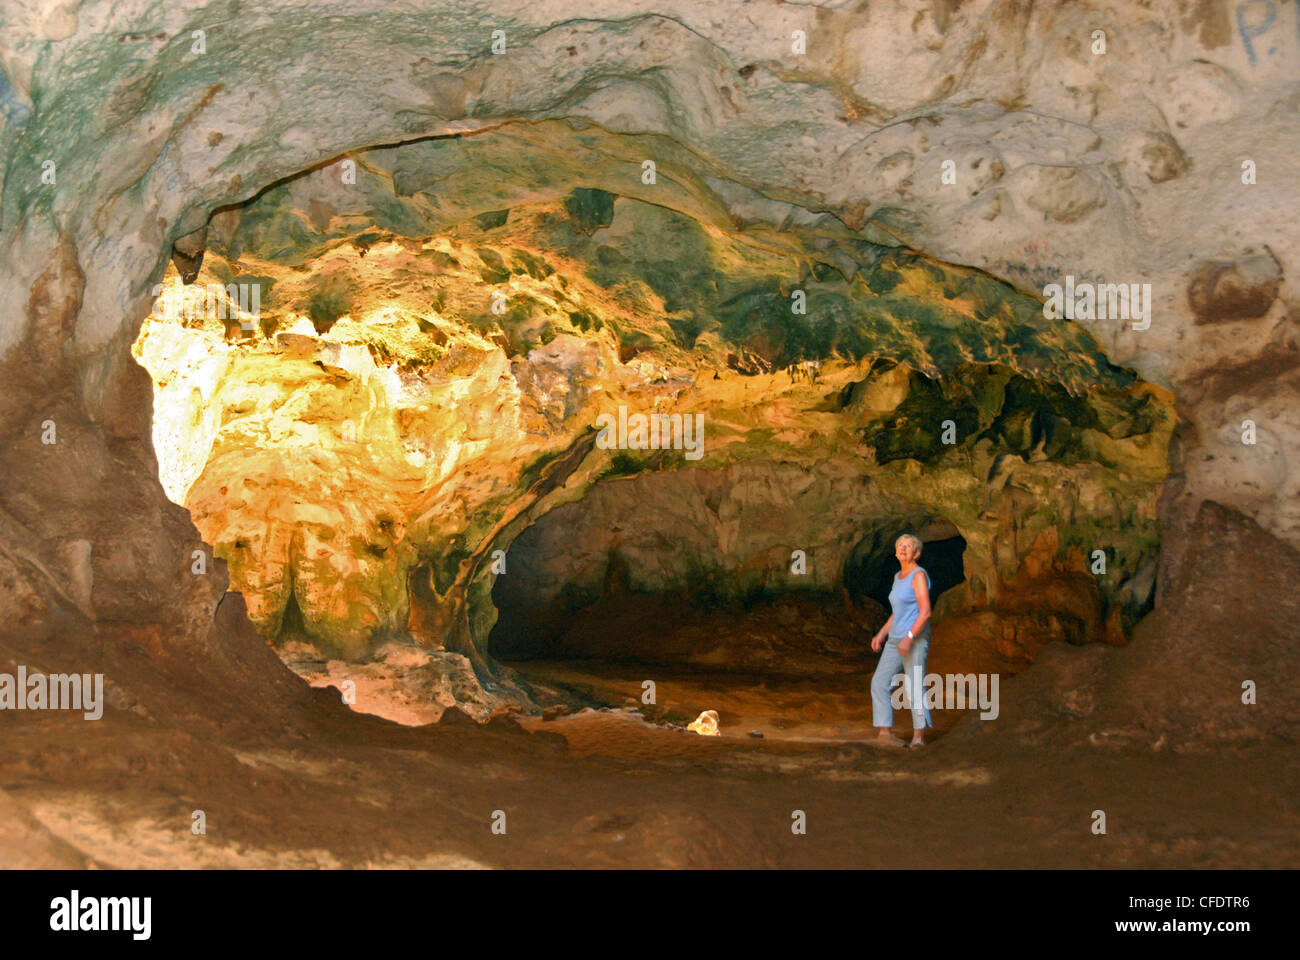 Huliba grottes calcaires, le Parc national Arikok, Aruba (Antilles néerlandaises), Antilles, Caraïbes, Amérique Centrale Banque D'Images